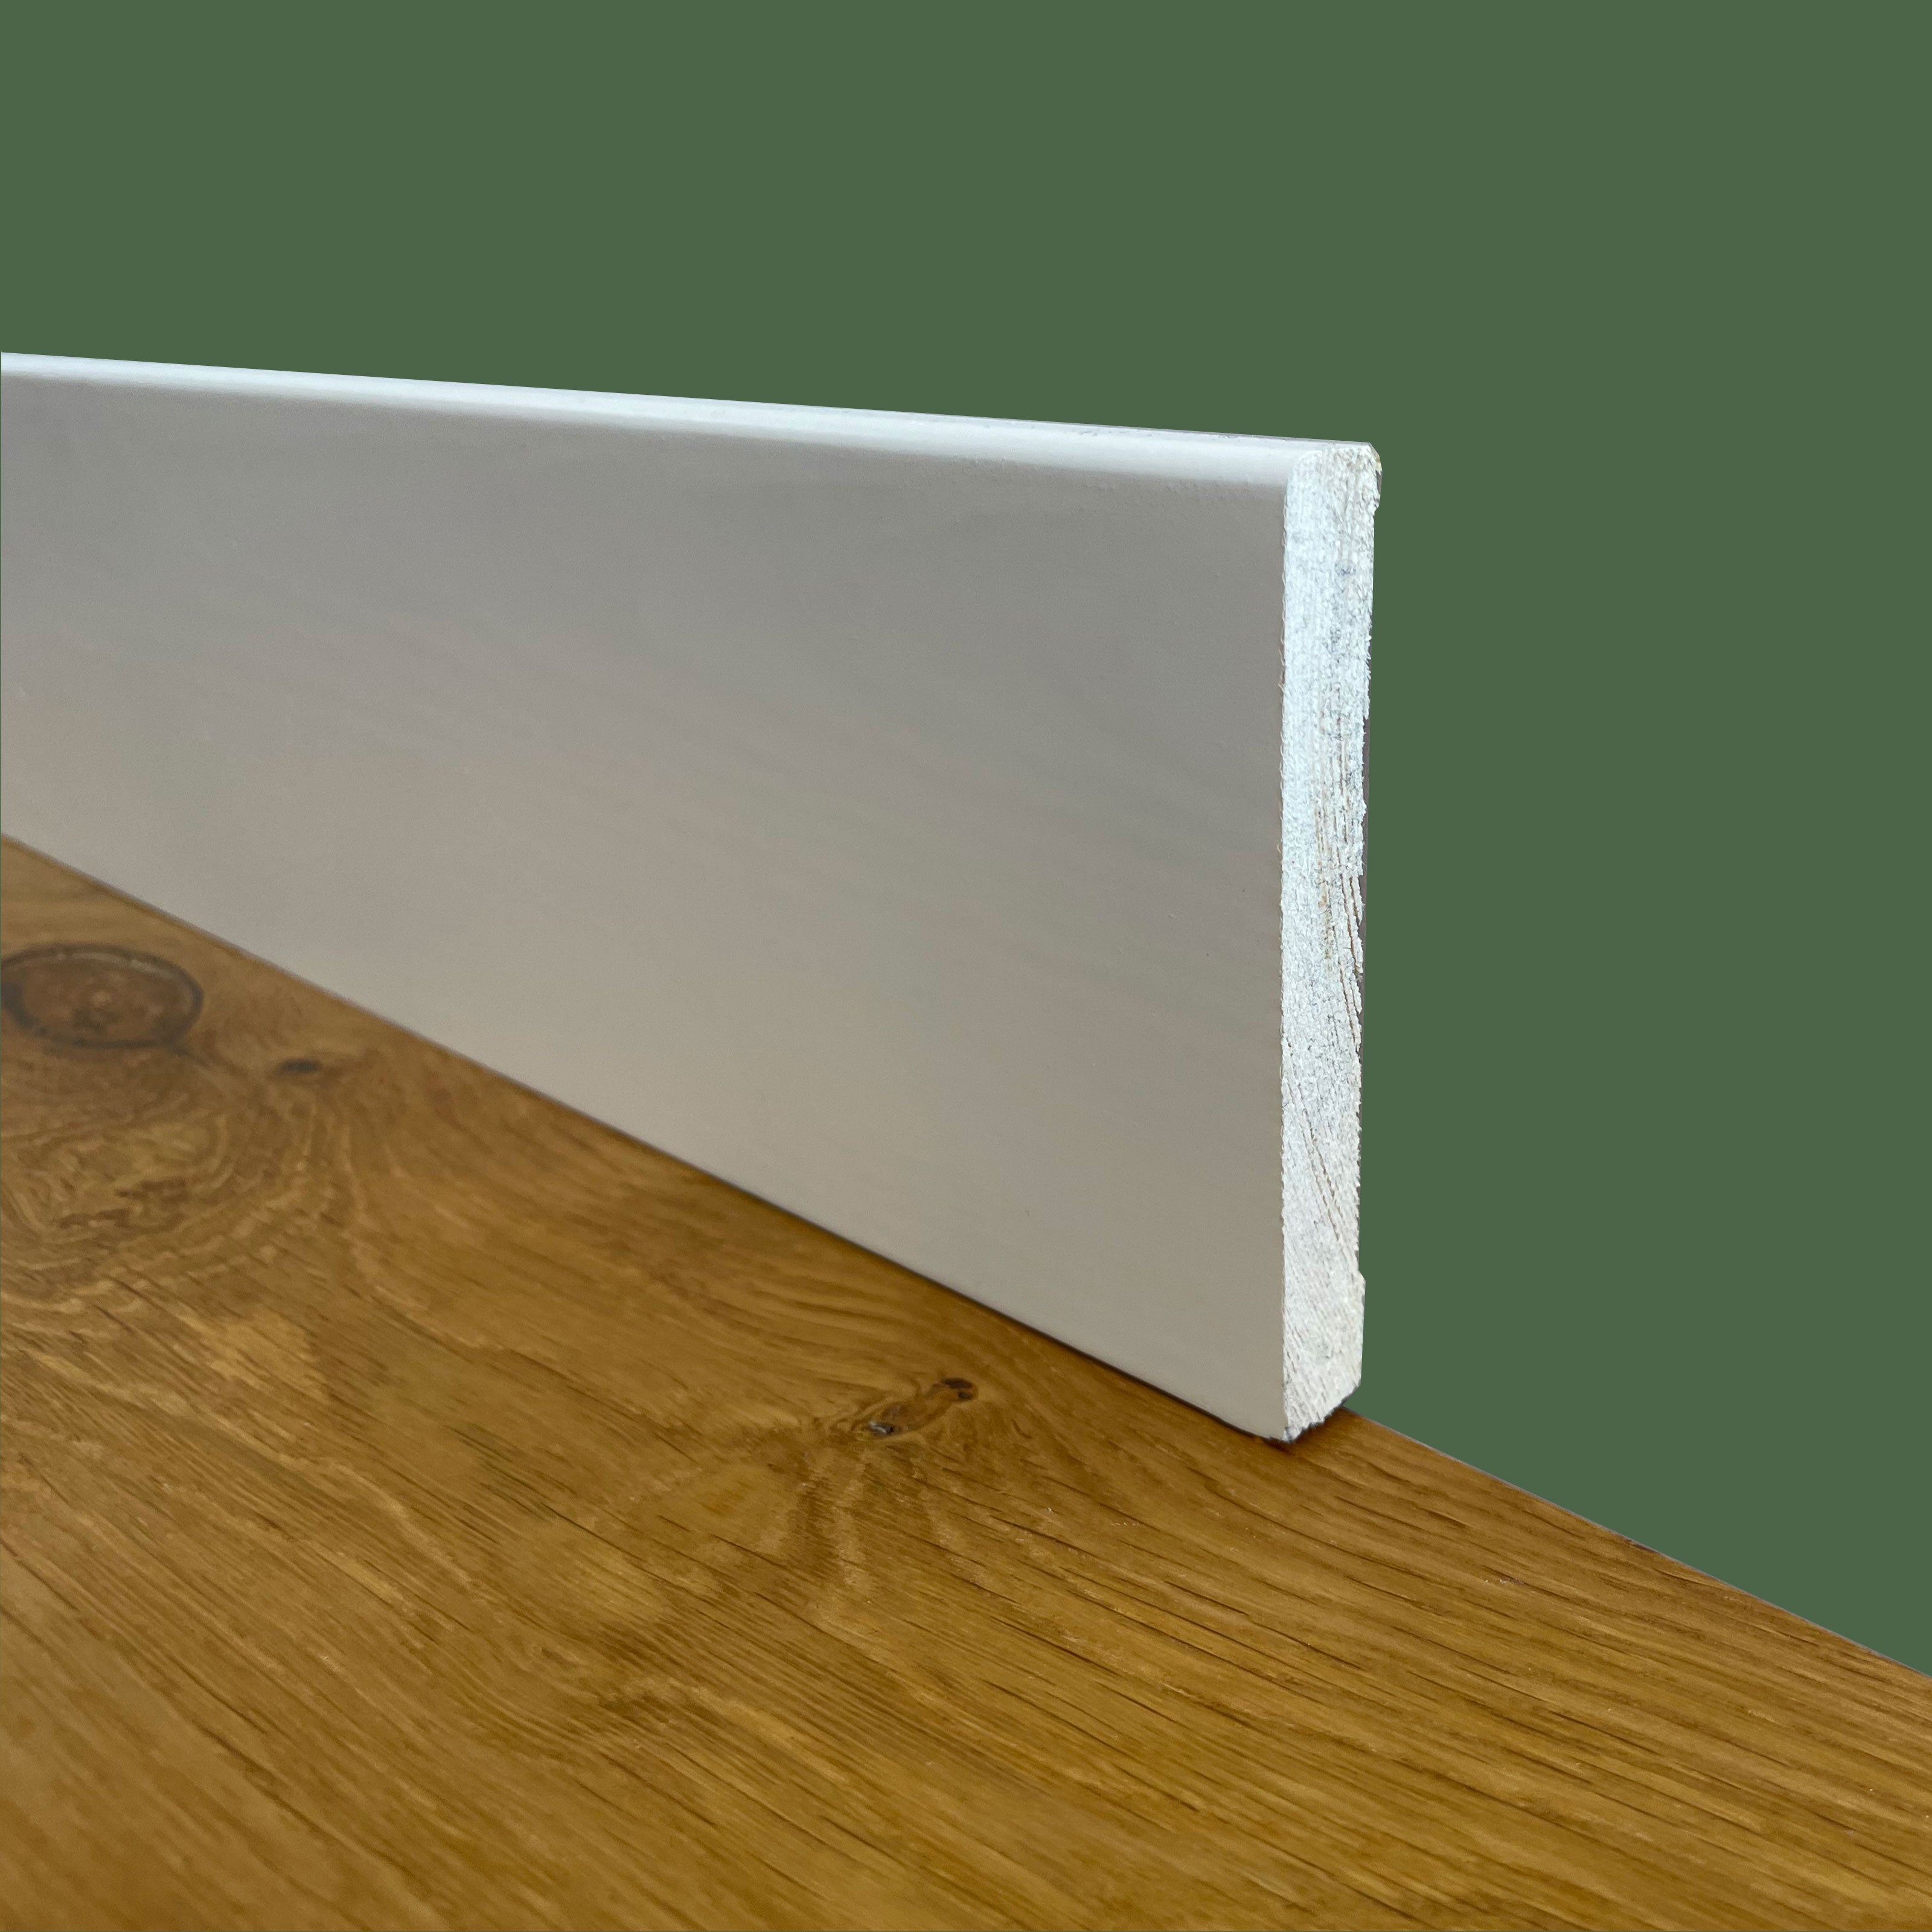 Battiscopa PREMIUM in legno MASSELLO squadrato 95x12 laccato bianco liscio (prezzo al metro) - Eternal Parquet